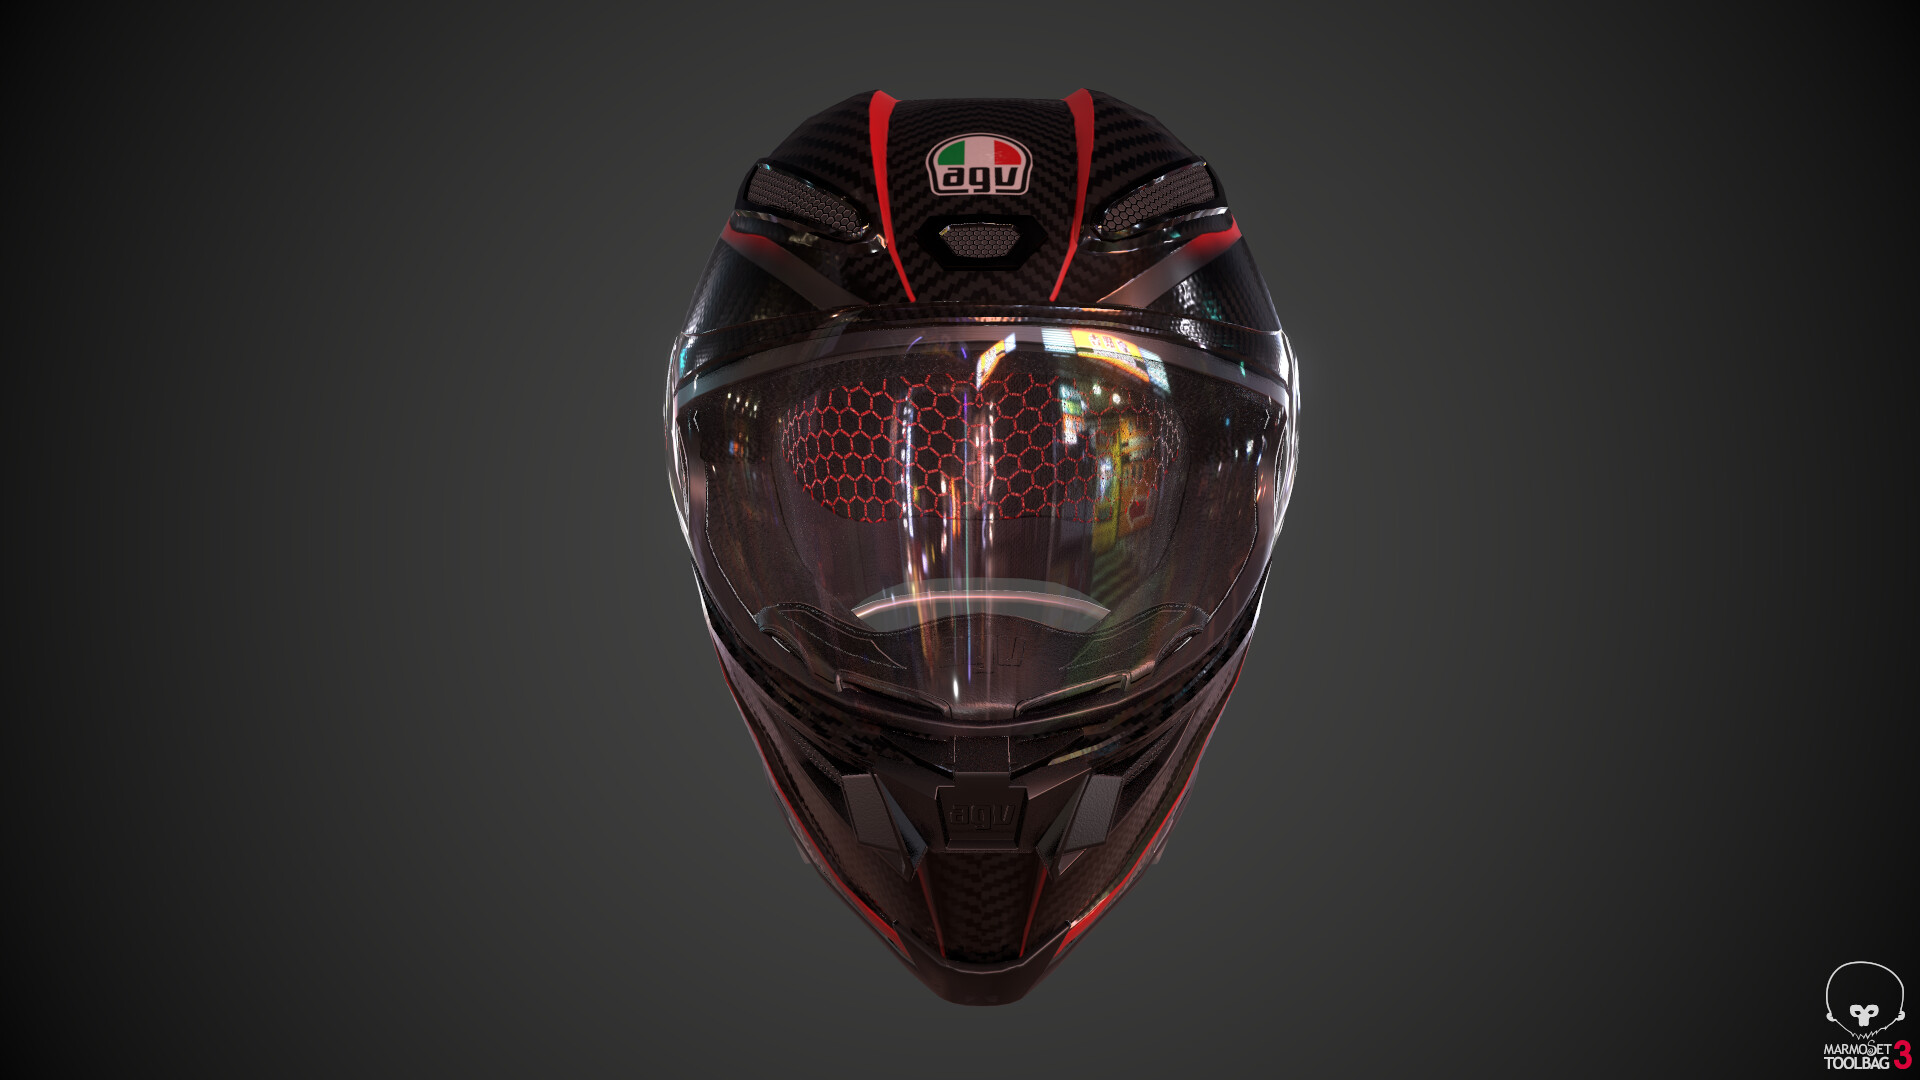 AGV Motorcycle helmet